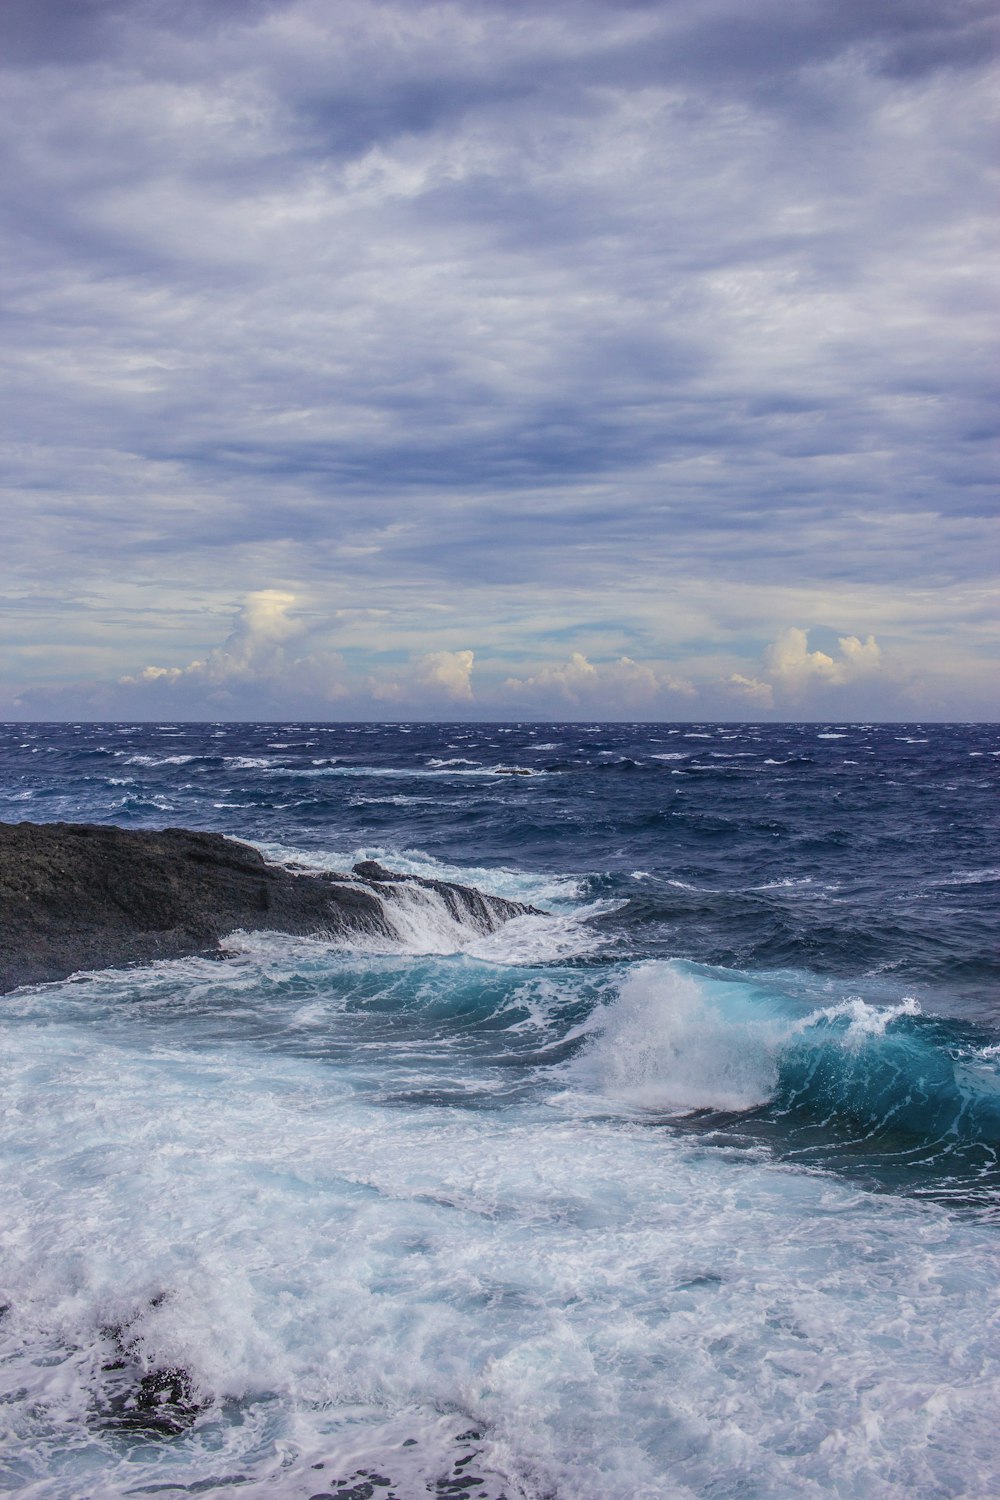 Les vagues de l’océan s’écrasent sur la formation rocheuse noire sous les nuages blancs pendant la journée